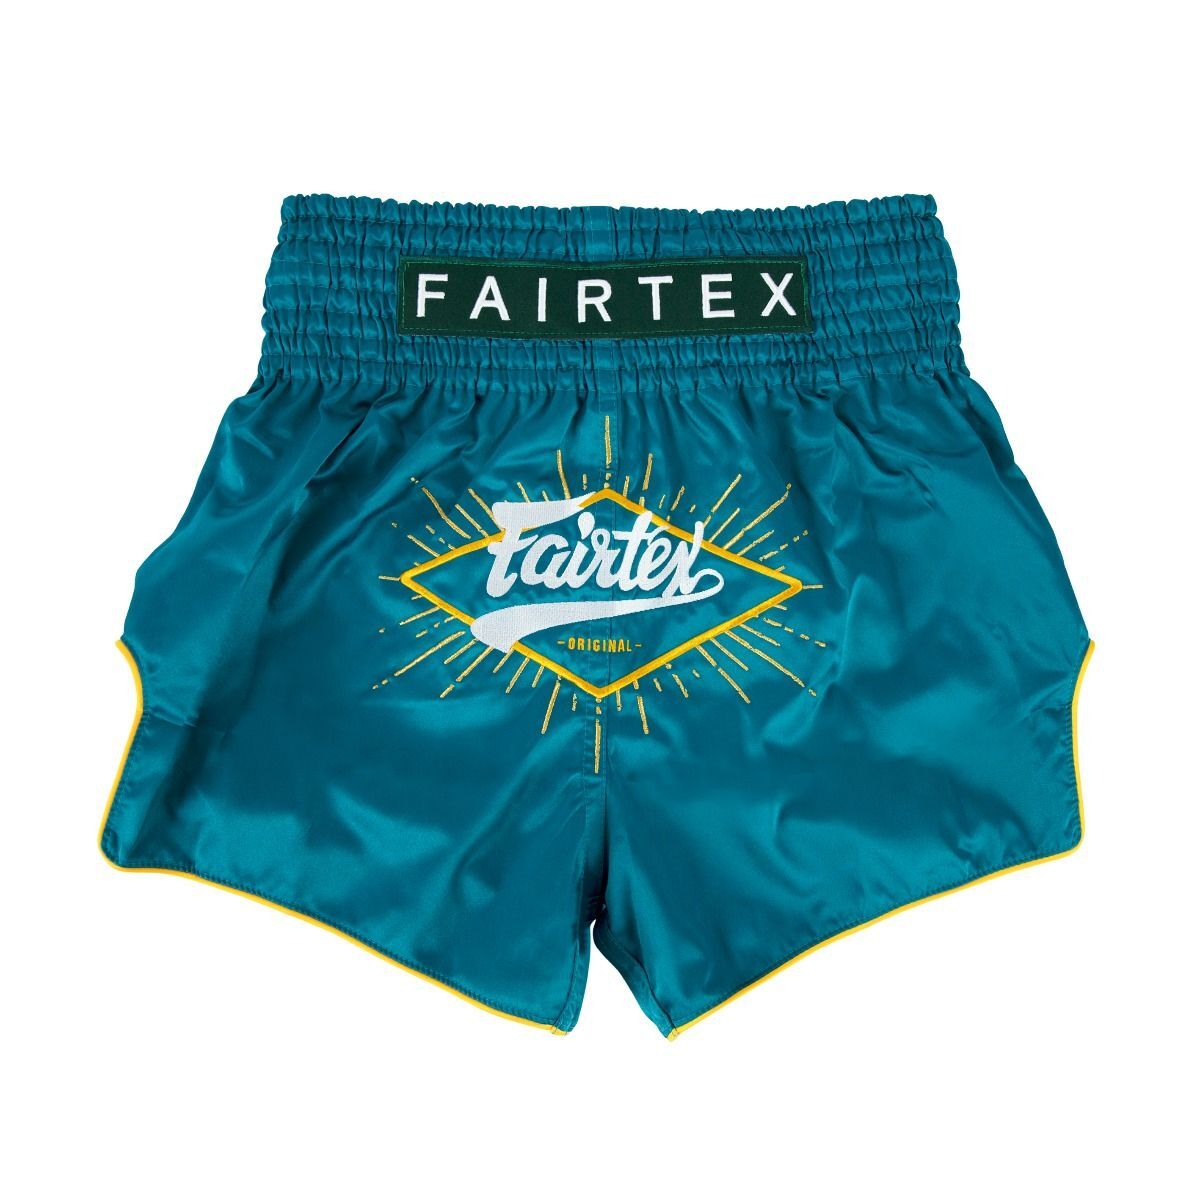 FAIRTEX - "Focus" Blue Muay Thai Shorts (BS1907) - Small